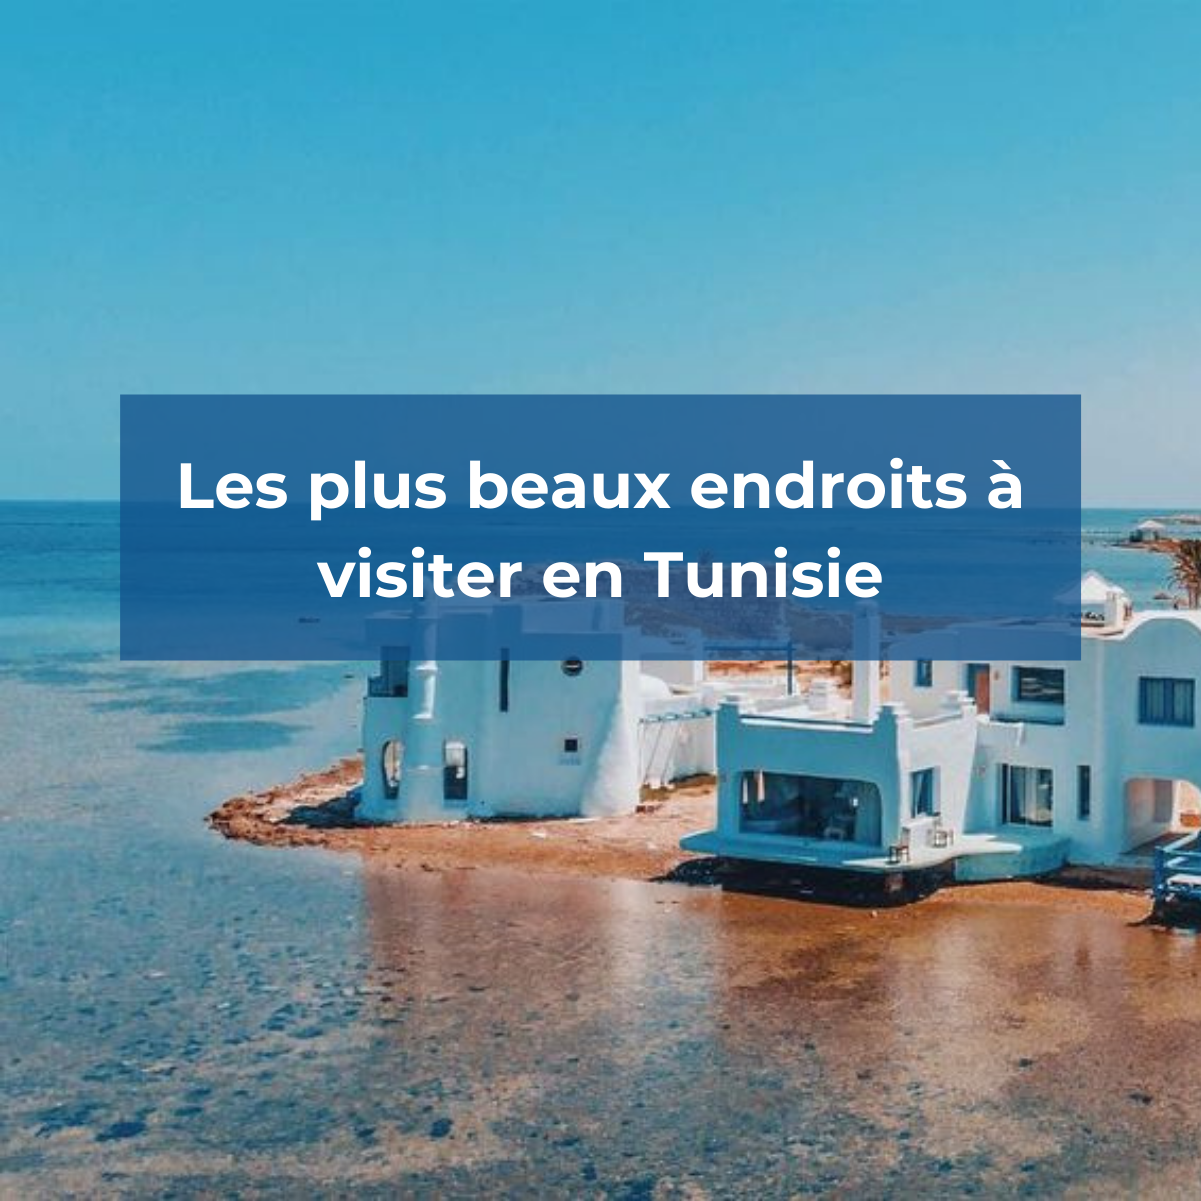 Quels sont les plus beaux endroits à visiter en Tunisie